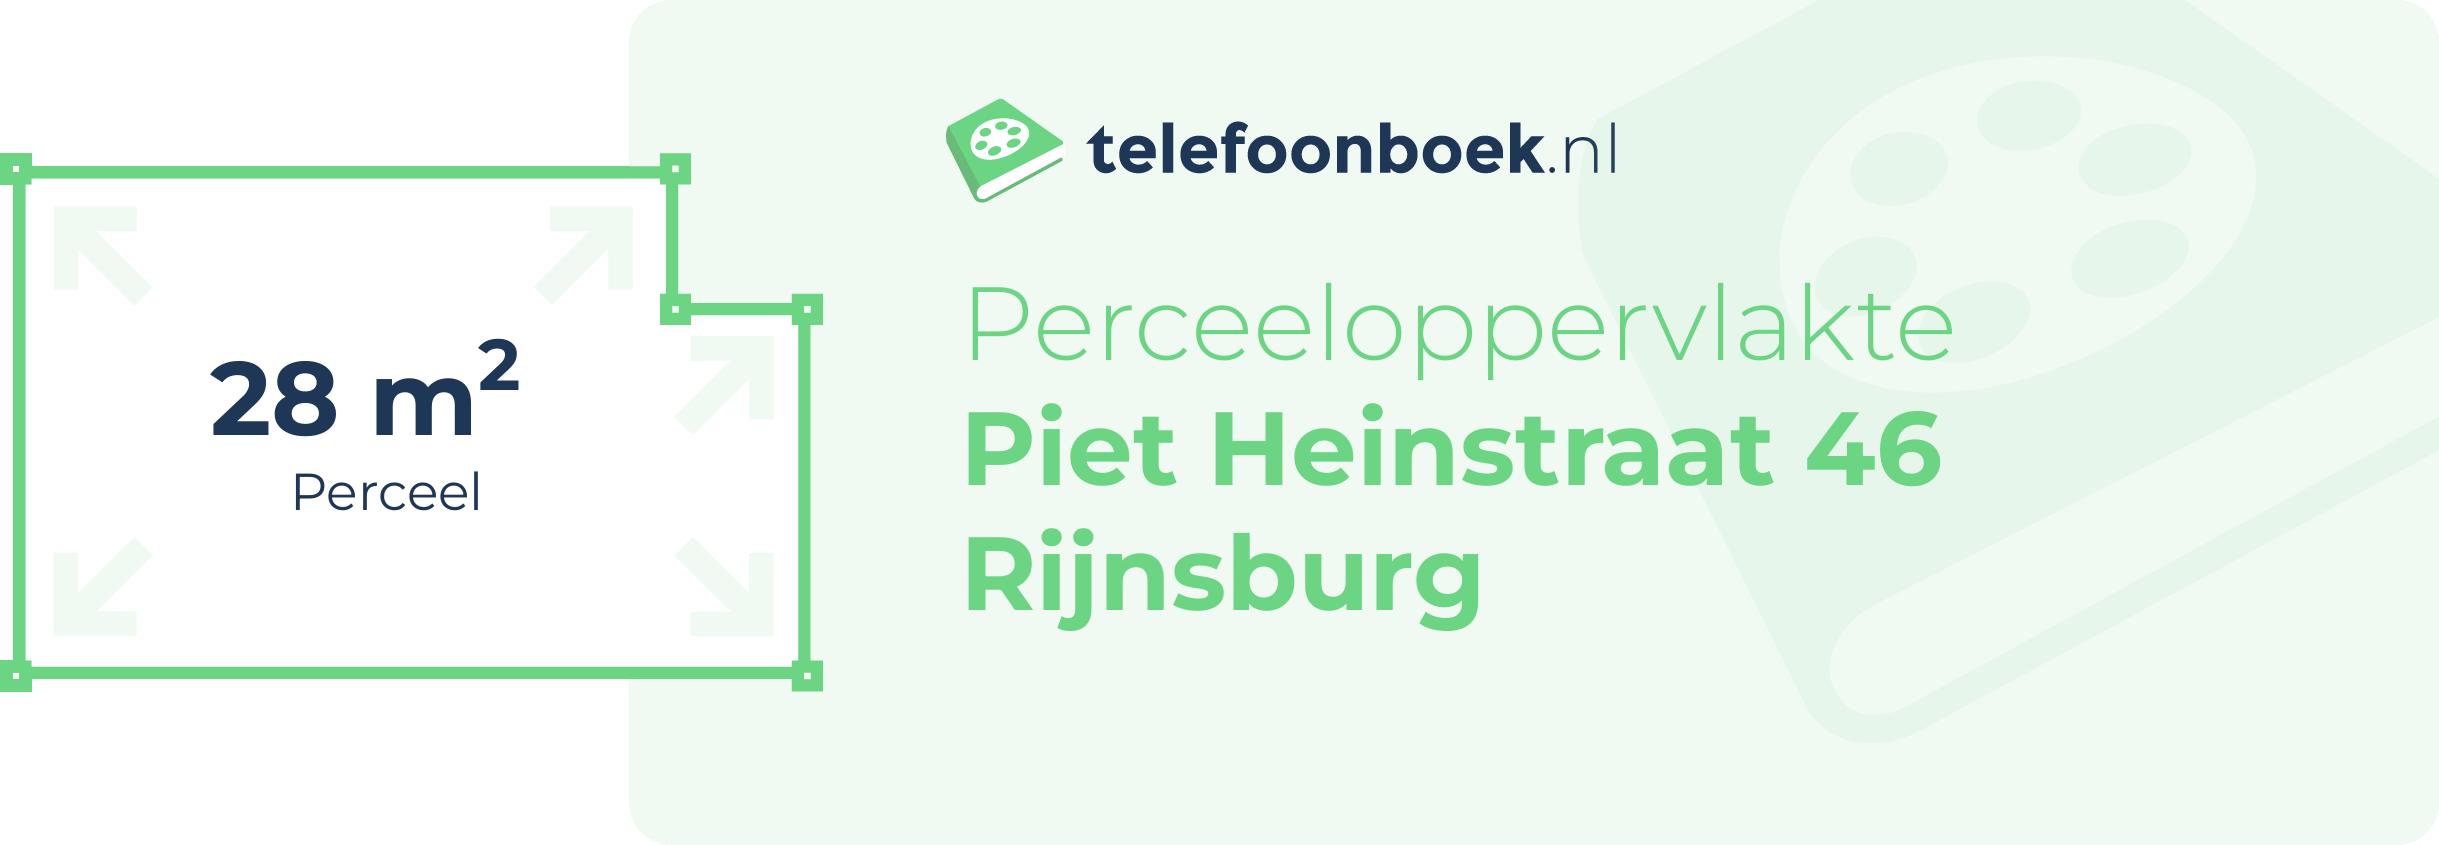 Perceeloppervlakte Piet Heinstraat 46 Rijnsburg